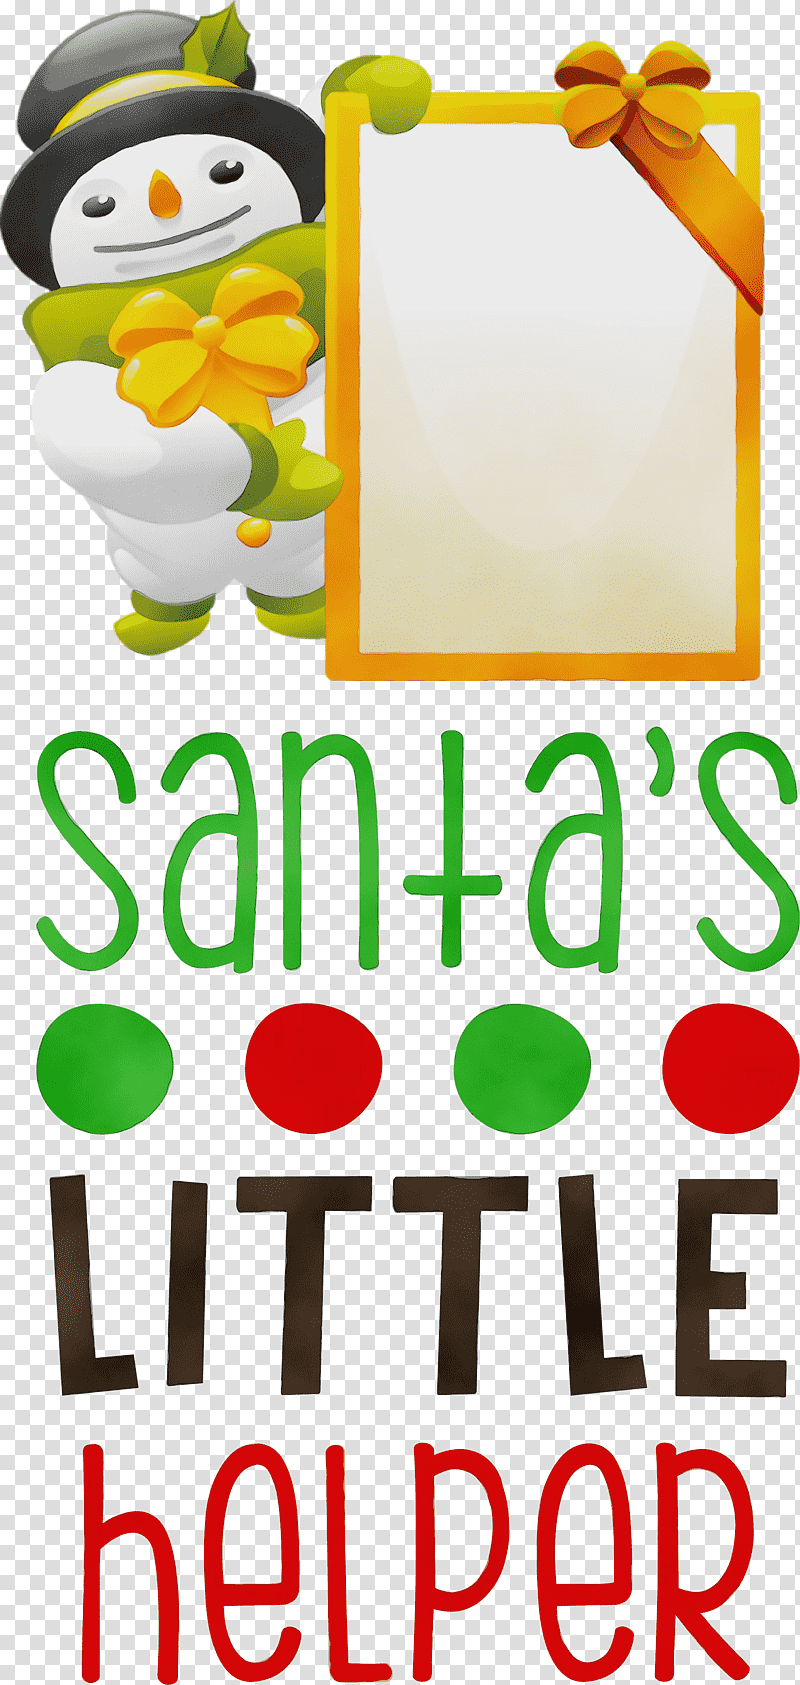 Christmas Day, Santas Little Helper, Watercolor, Paint, Wet Ink, Christmas Decoration, Santa Claus transparent background PNG clipart